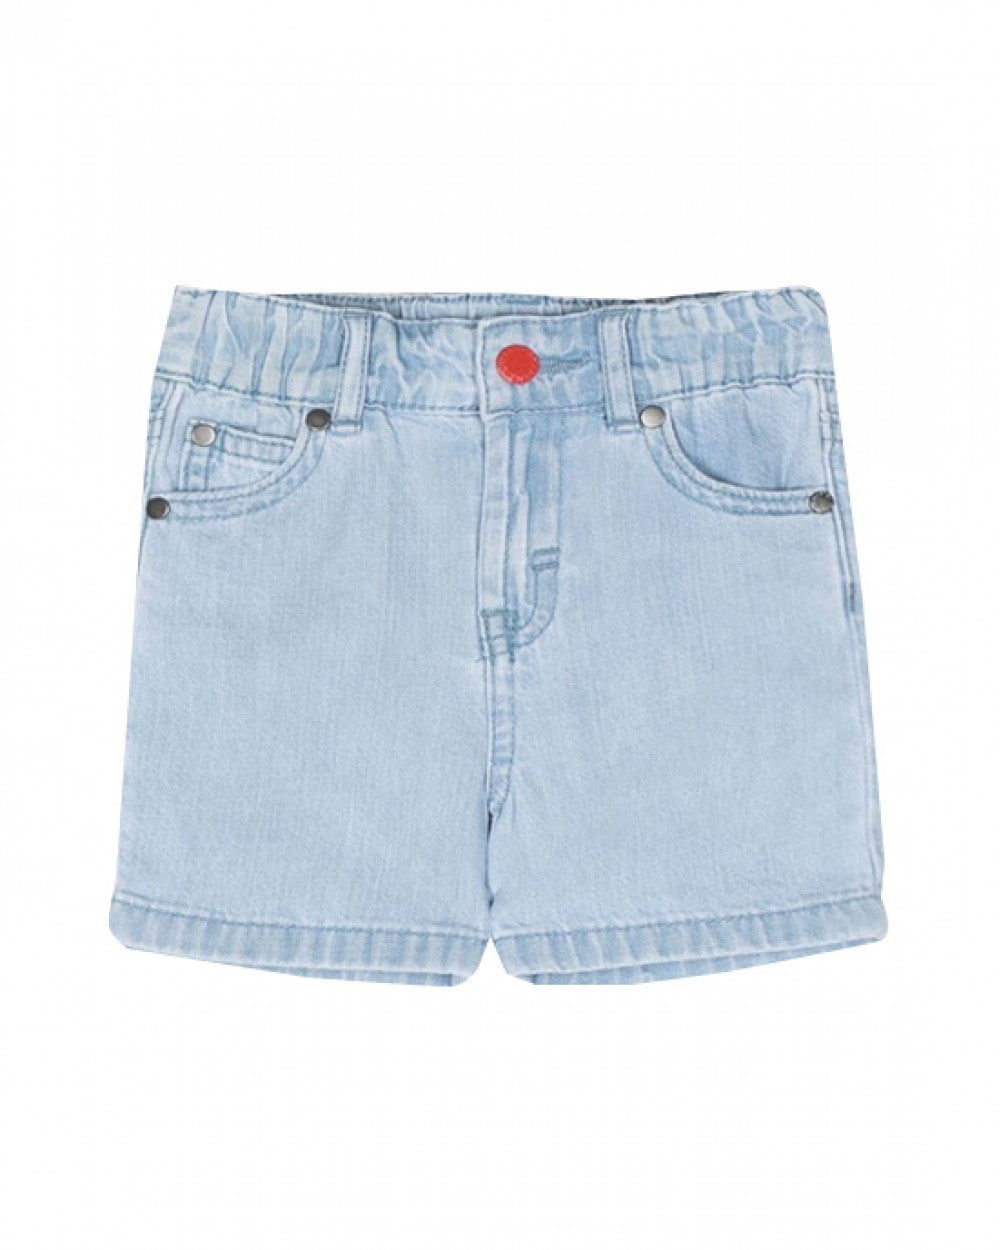 Stella McCartney Kids - Denim bermuda shorts with red button